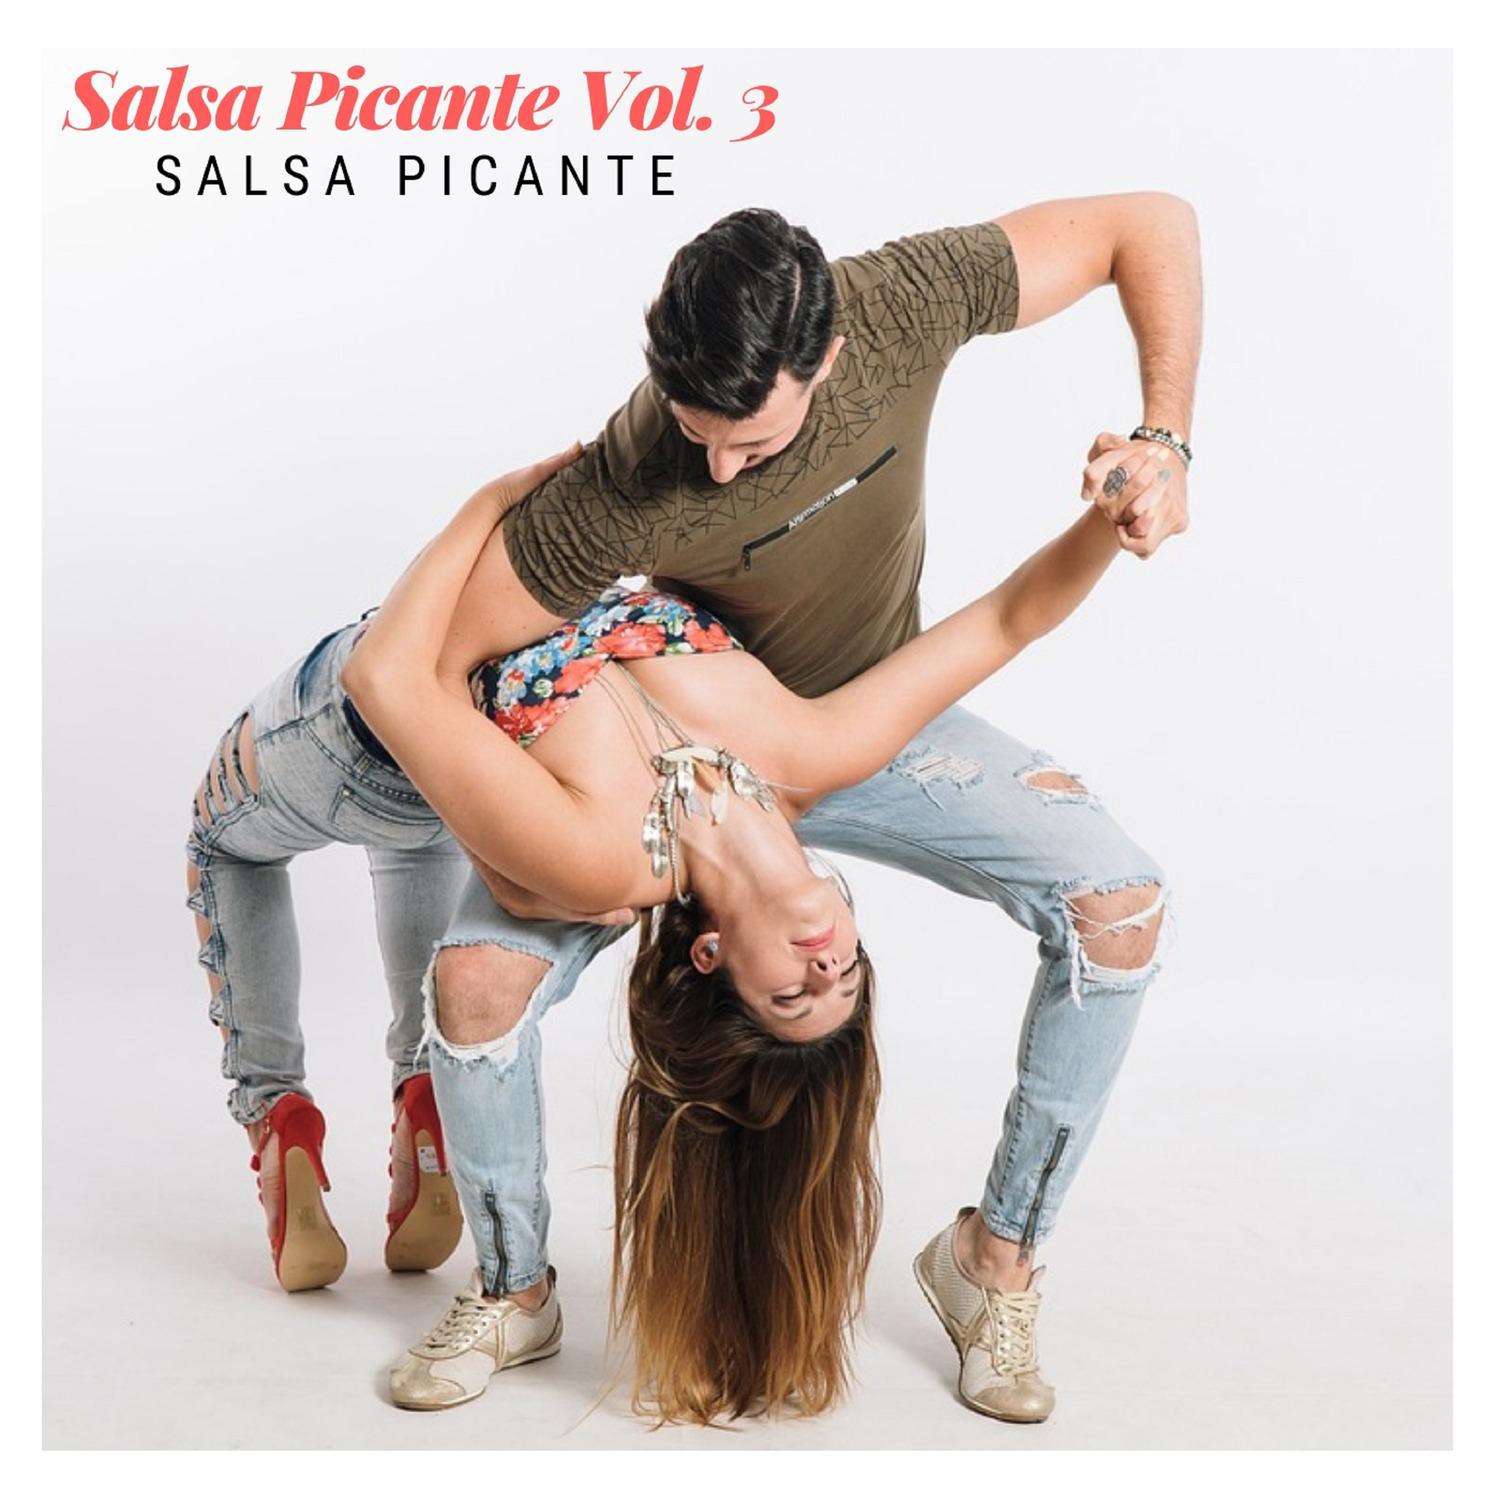 Salsa Picante, Vol. 3